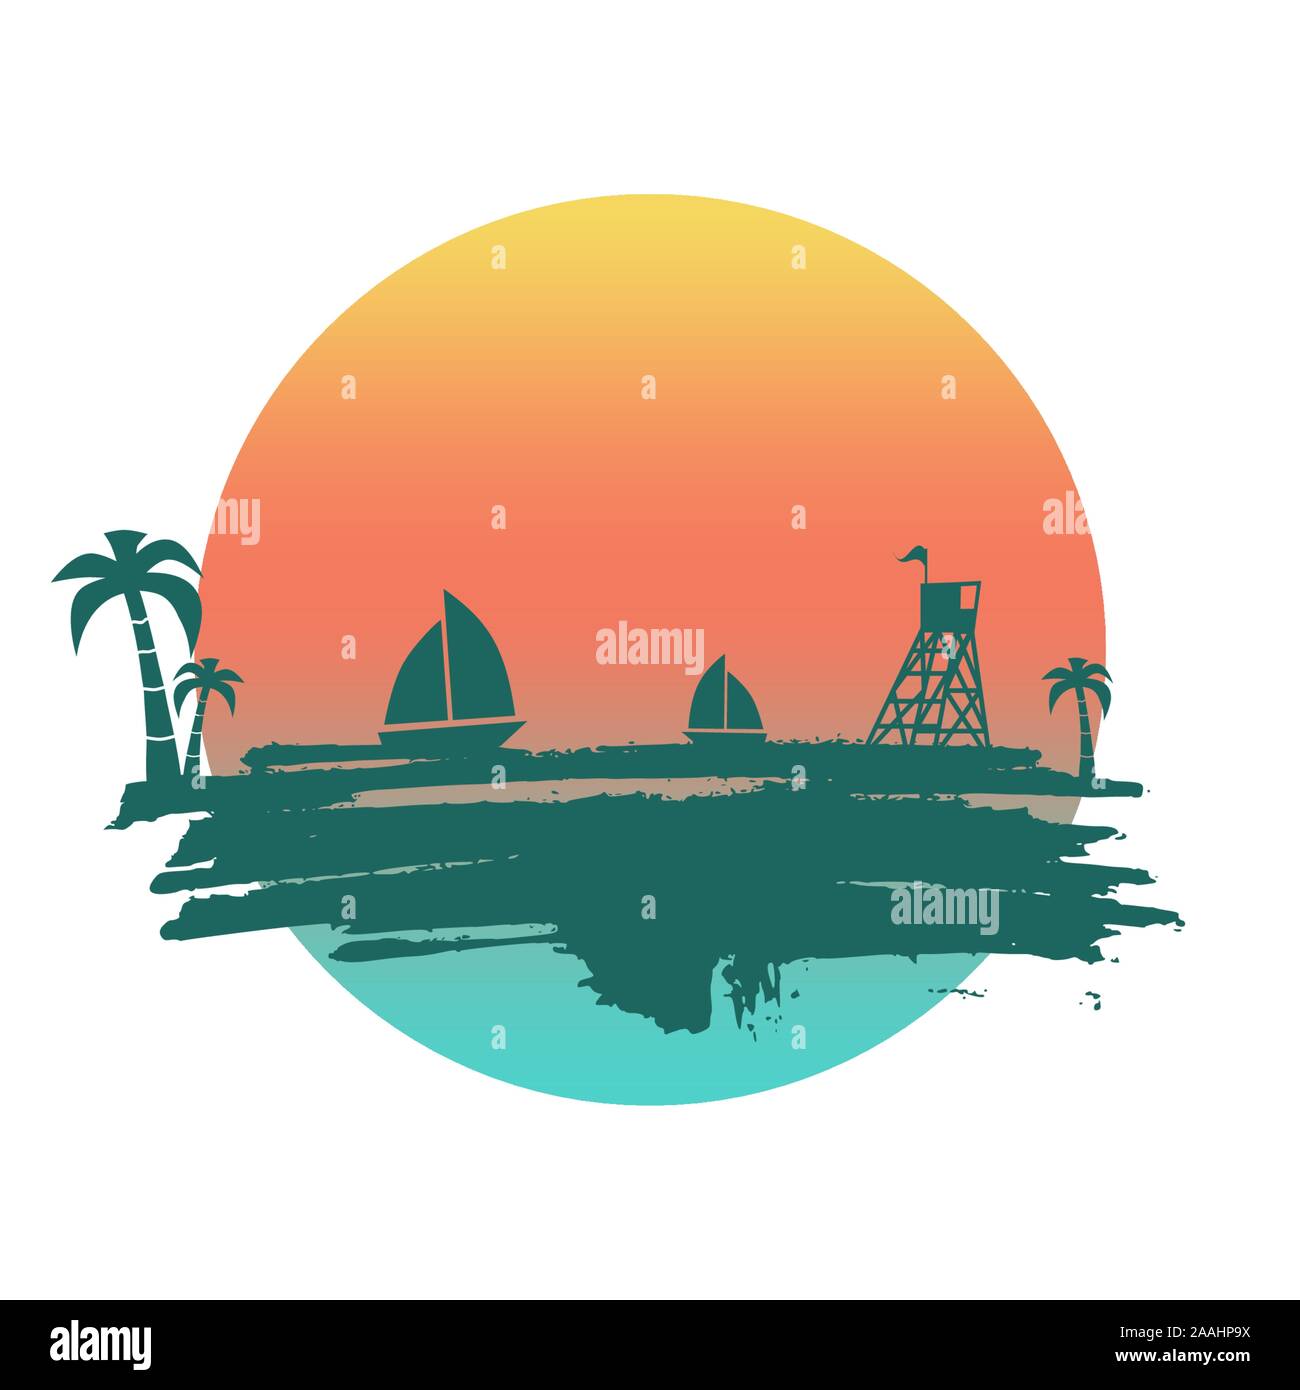 Jahrgang am Meer Poster. Vector Hintergrund. Palm und Turm am Strand sichern. Yacht im Ozean. Silhouetten auf grunge Pinselstrich Stock Vektor